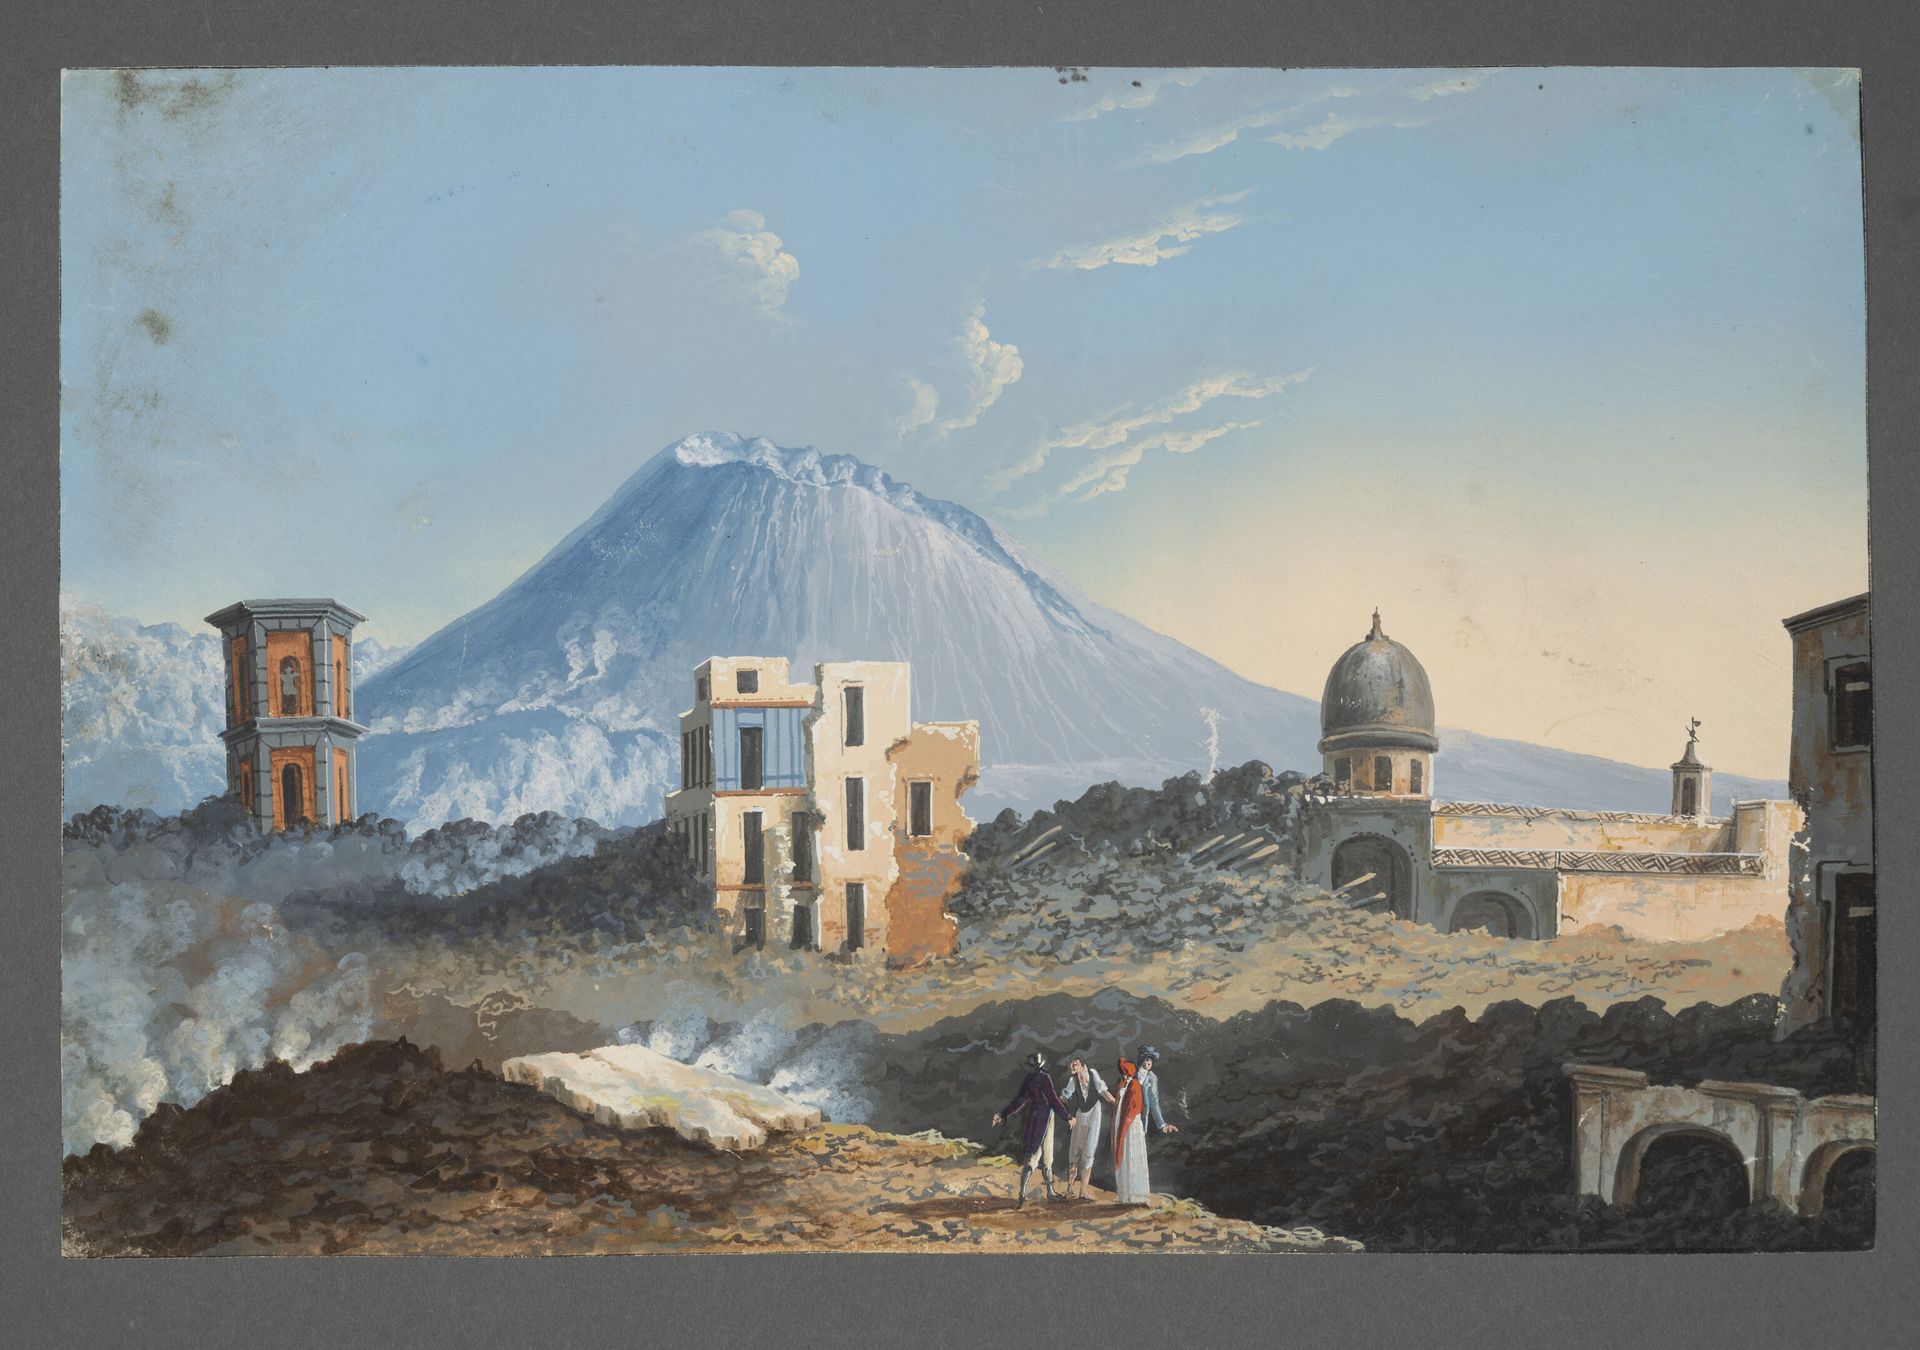 Null 意大利学校，19世纪初
维苏威火山景观 
水粉画
床单：高26厘米，长41.2厘米。
有些磨损和污渍